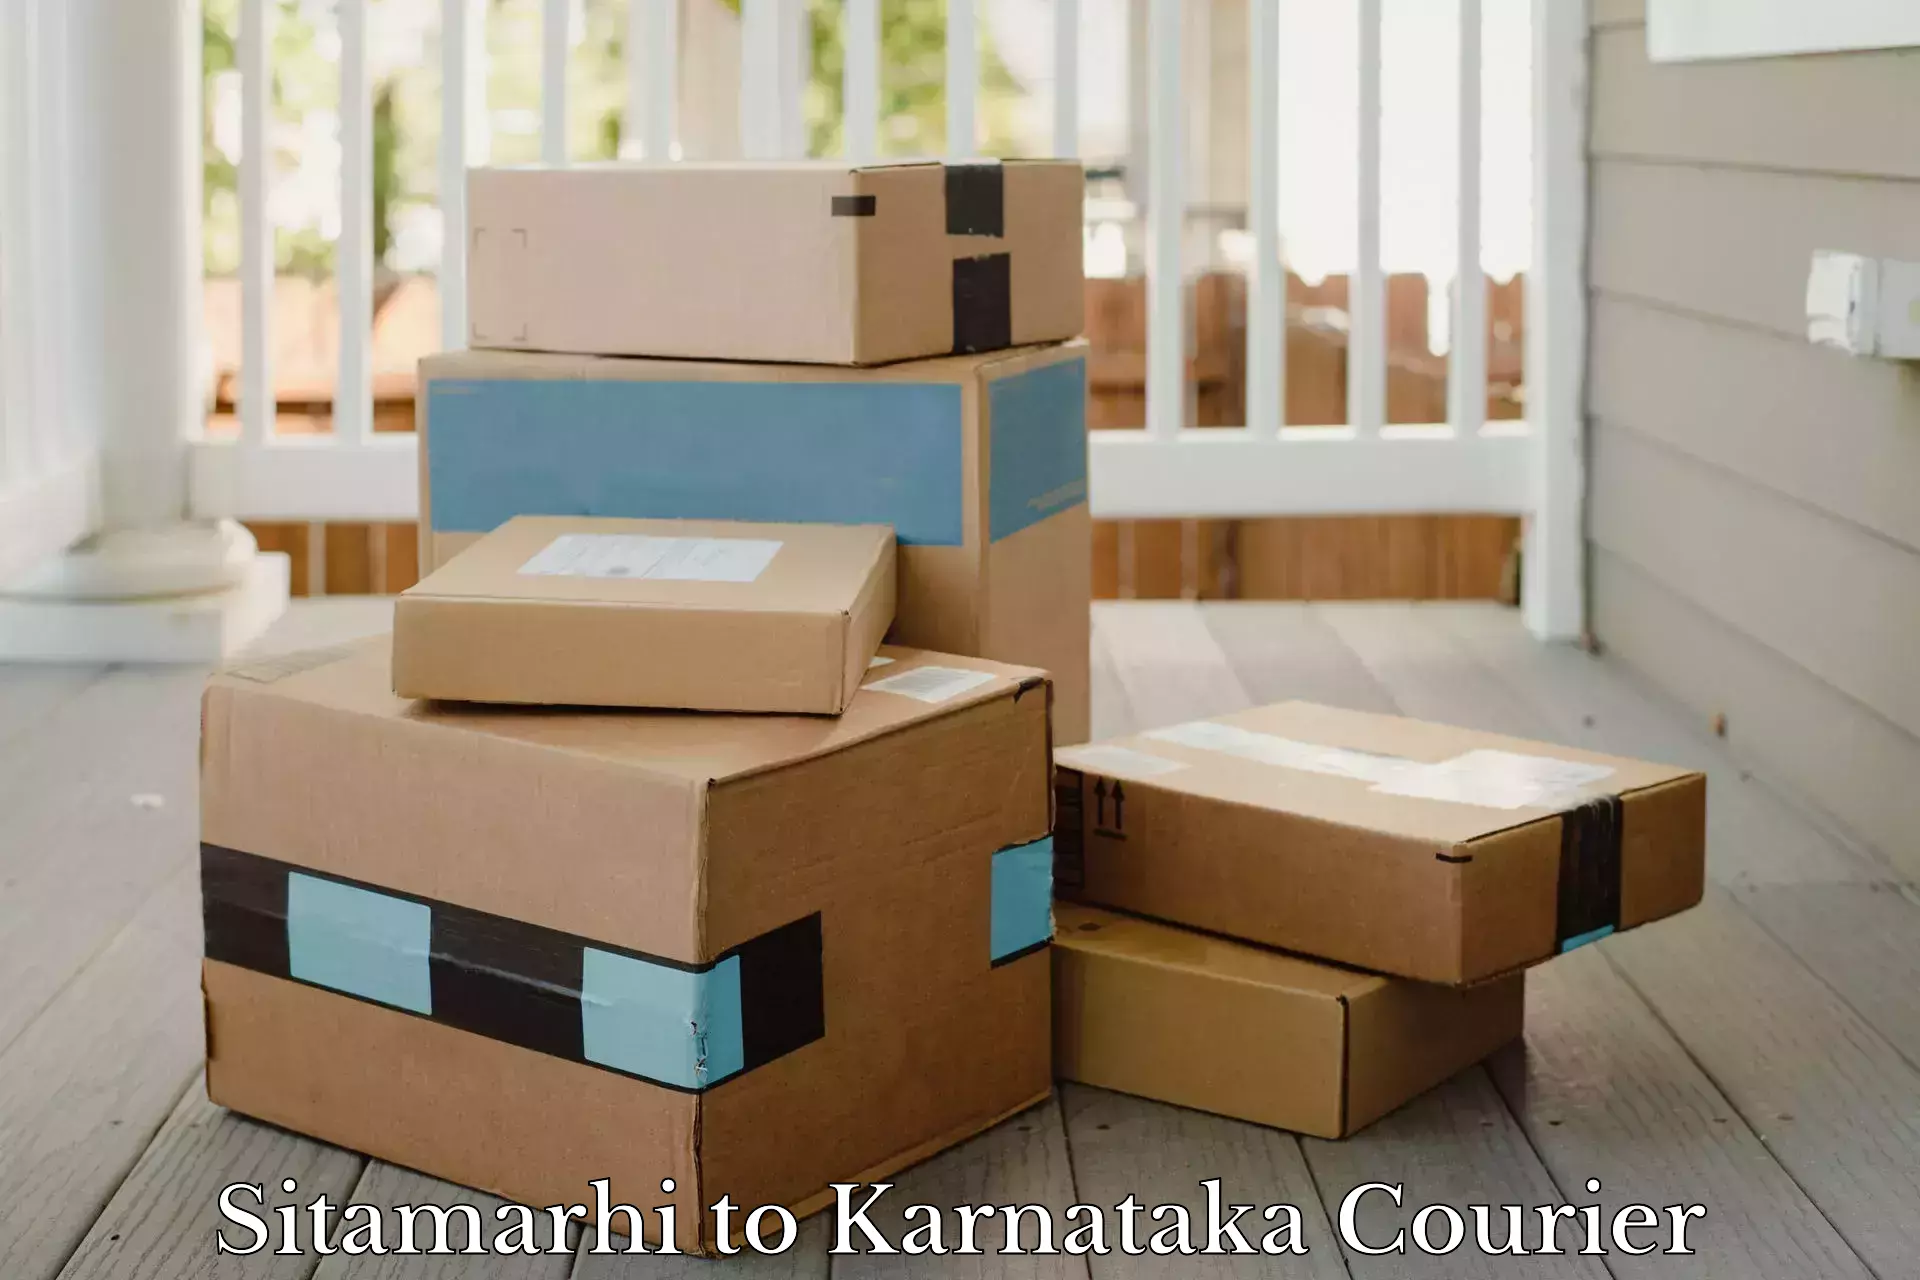 User-friendly courier app Sitamarhi to Sakleshpur